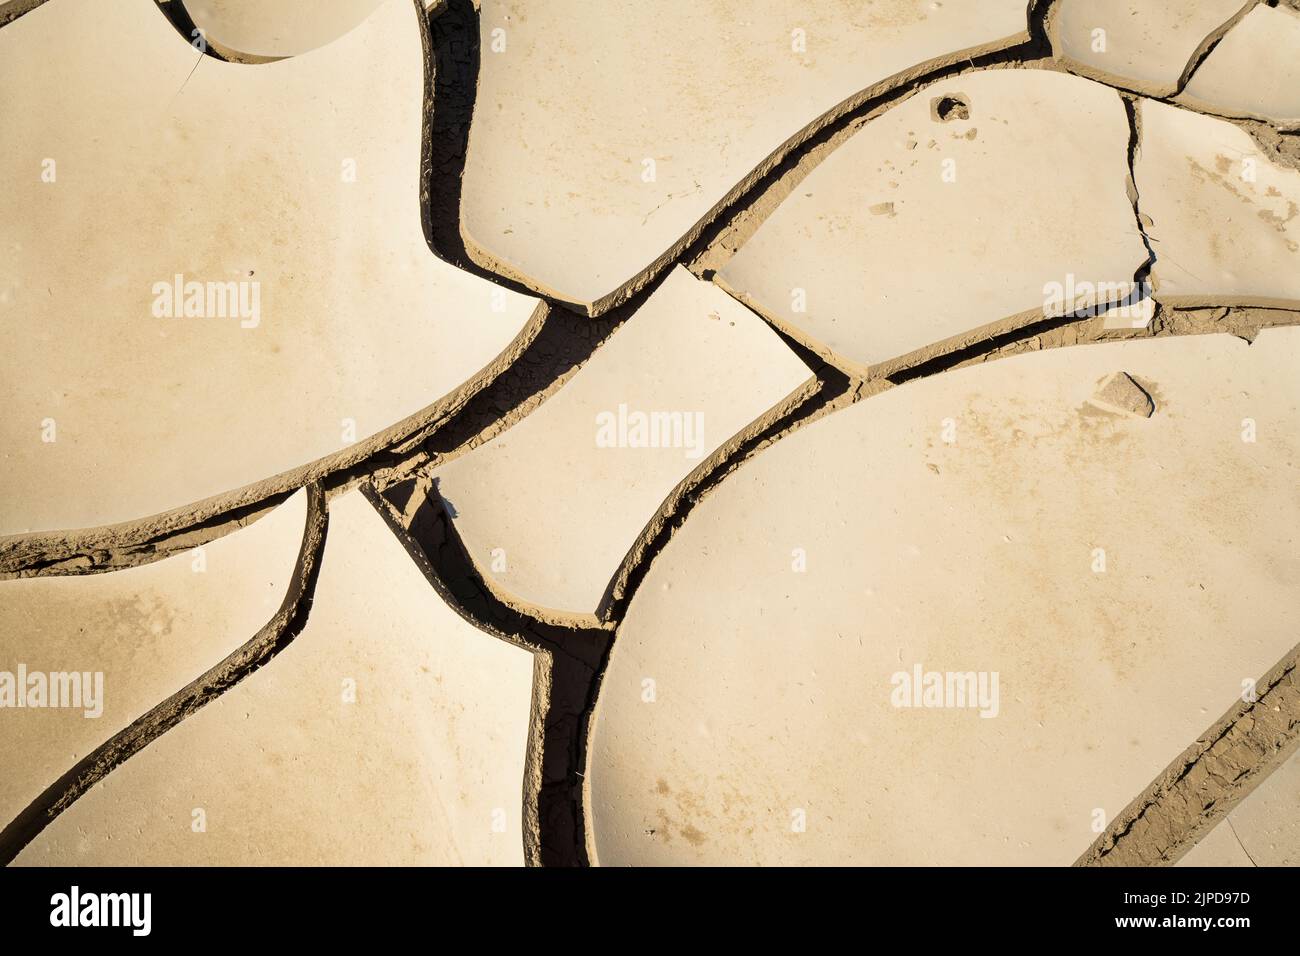 Motifs en argile dans un lit de rivière sec, changement climatique symbolique. Rivière Swakop, Namibie, Afrique Banque D'Images